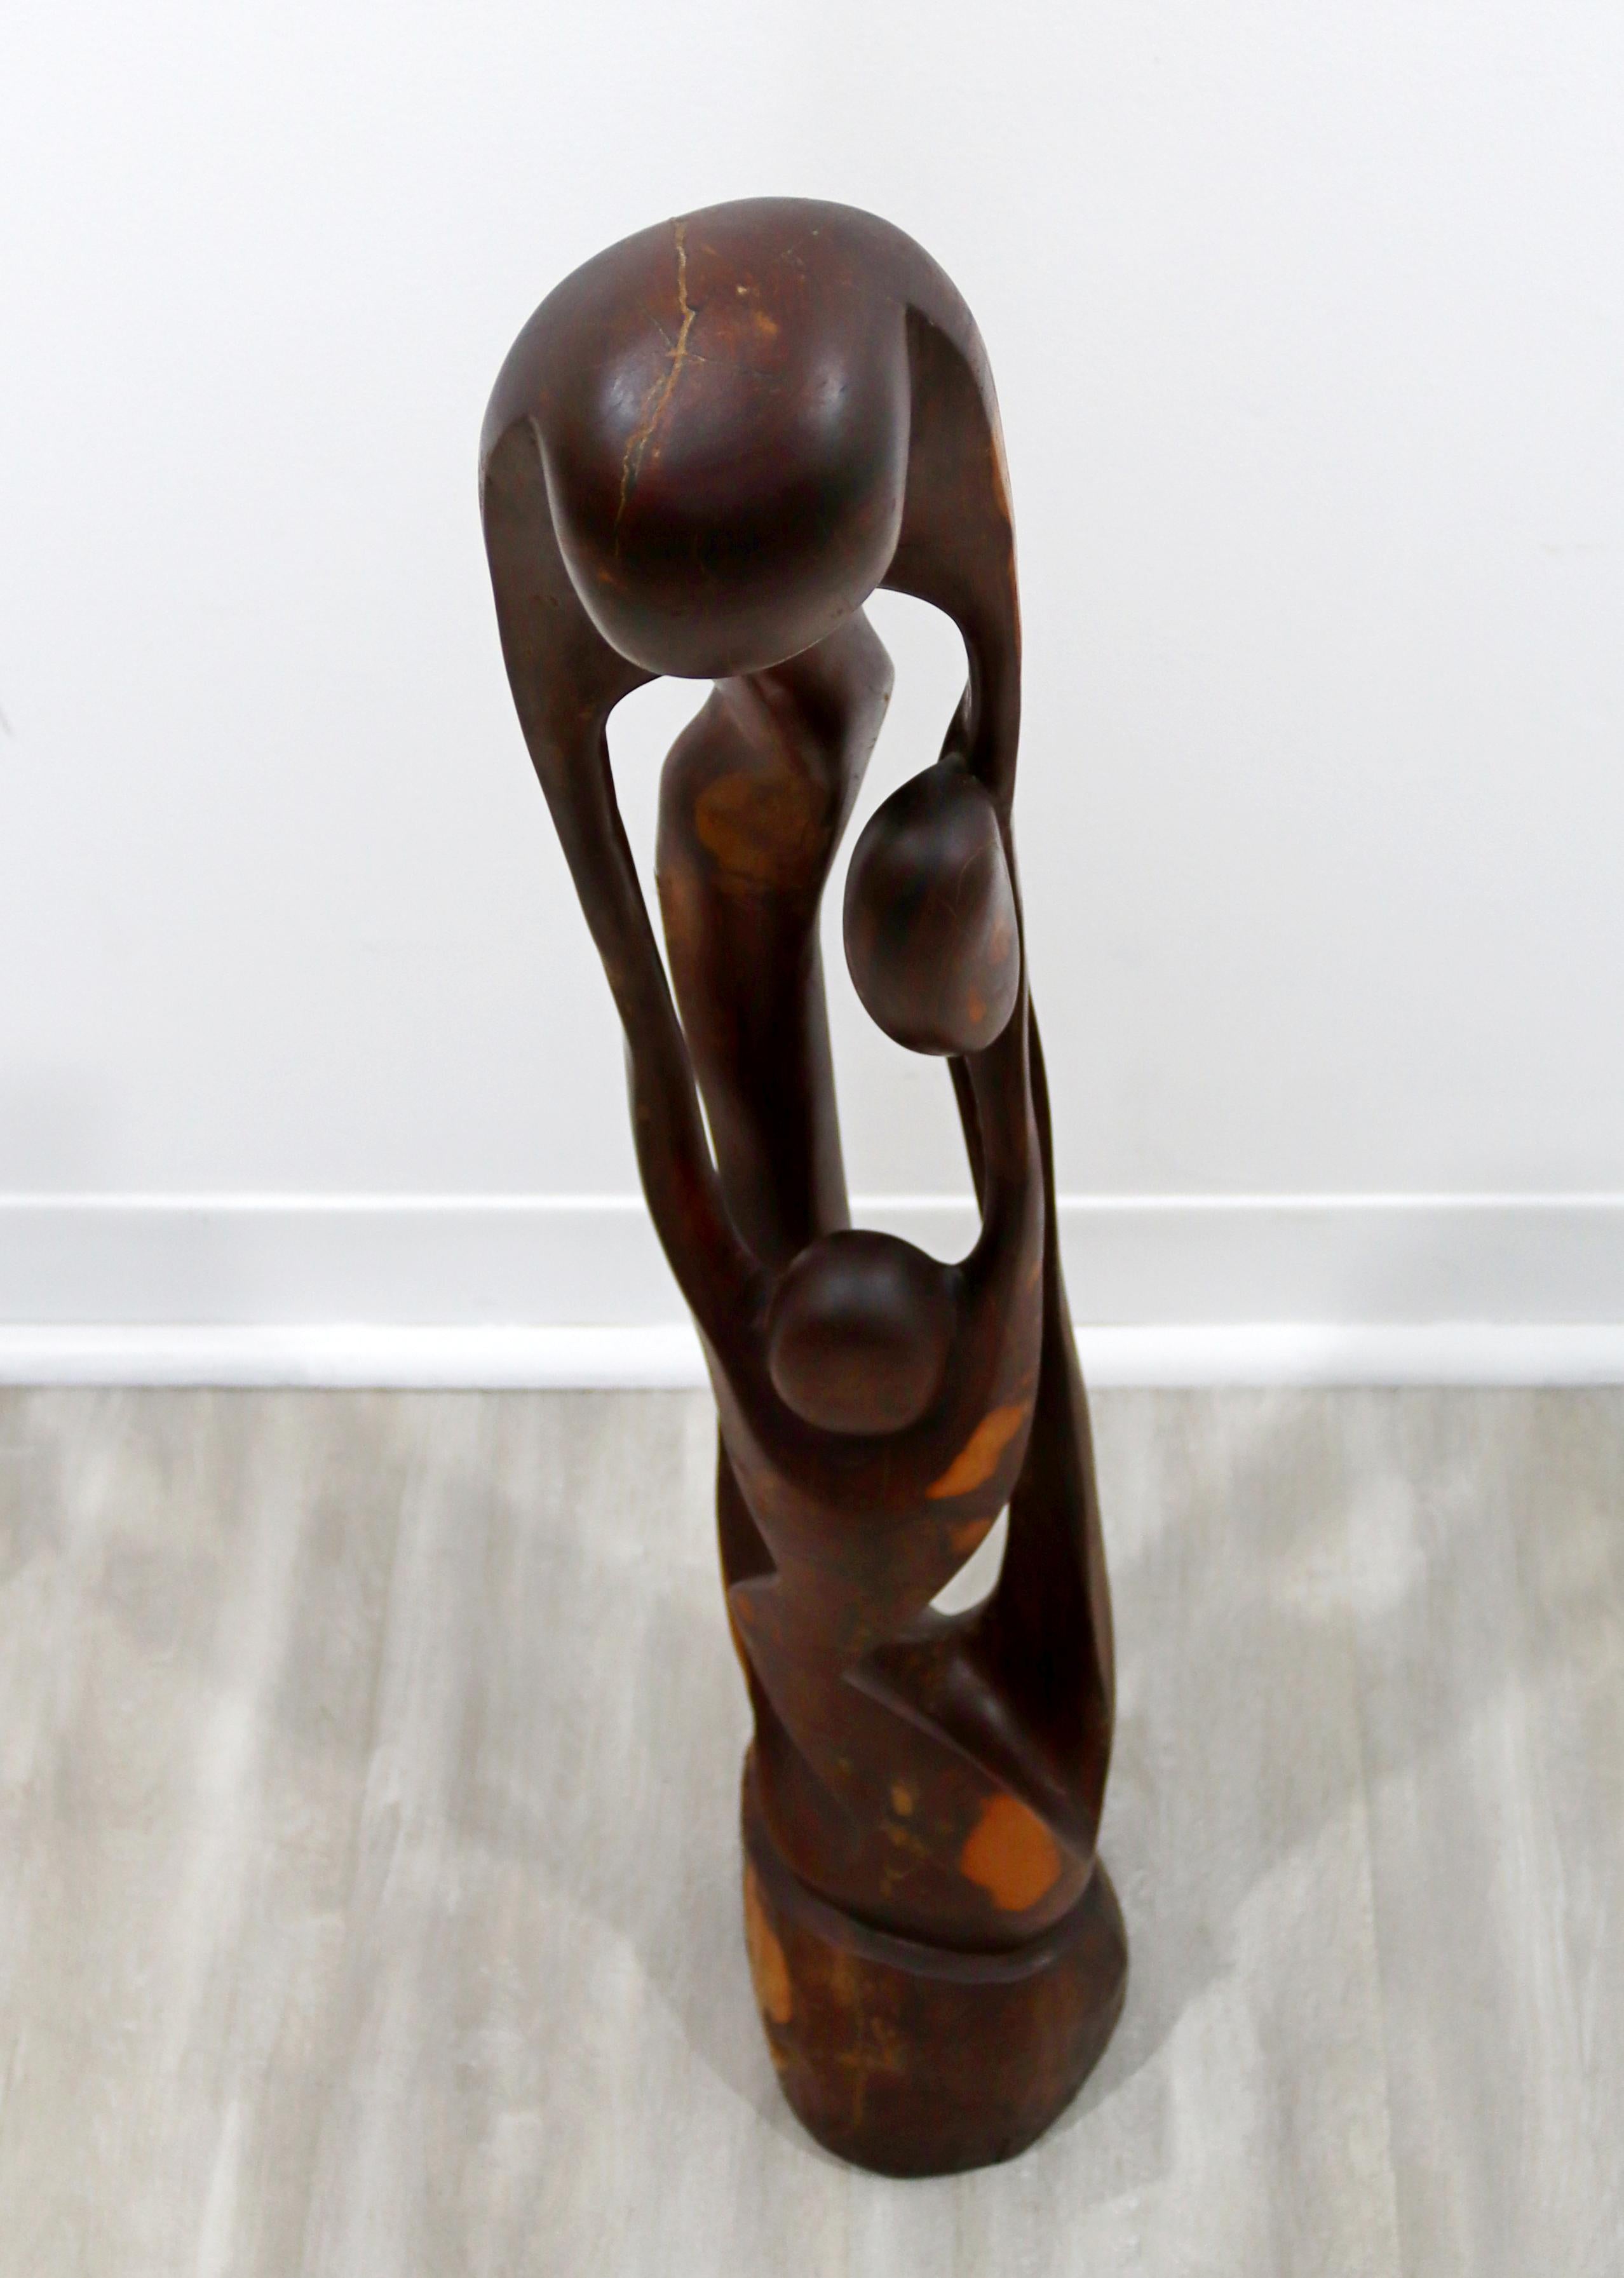 Nous vous proposons une magnifique sculpture en bois ou une statue de figures abstraites. Vintage, en excellent état. Les dimensions sont de 5